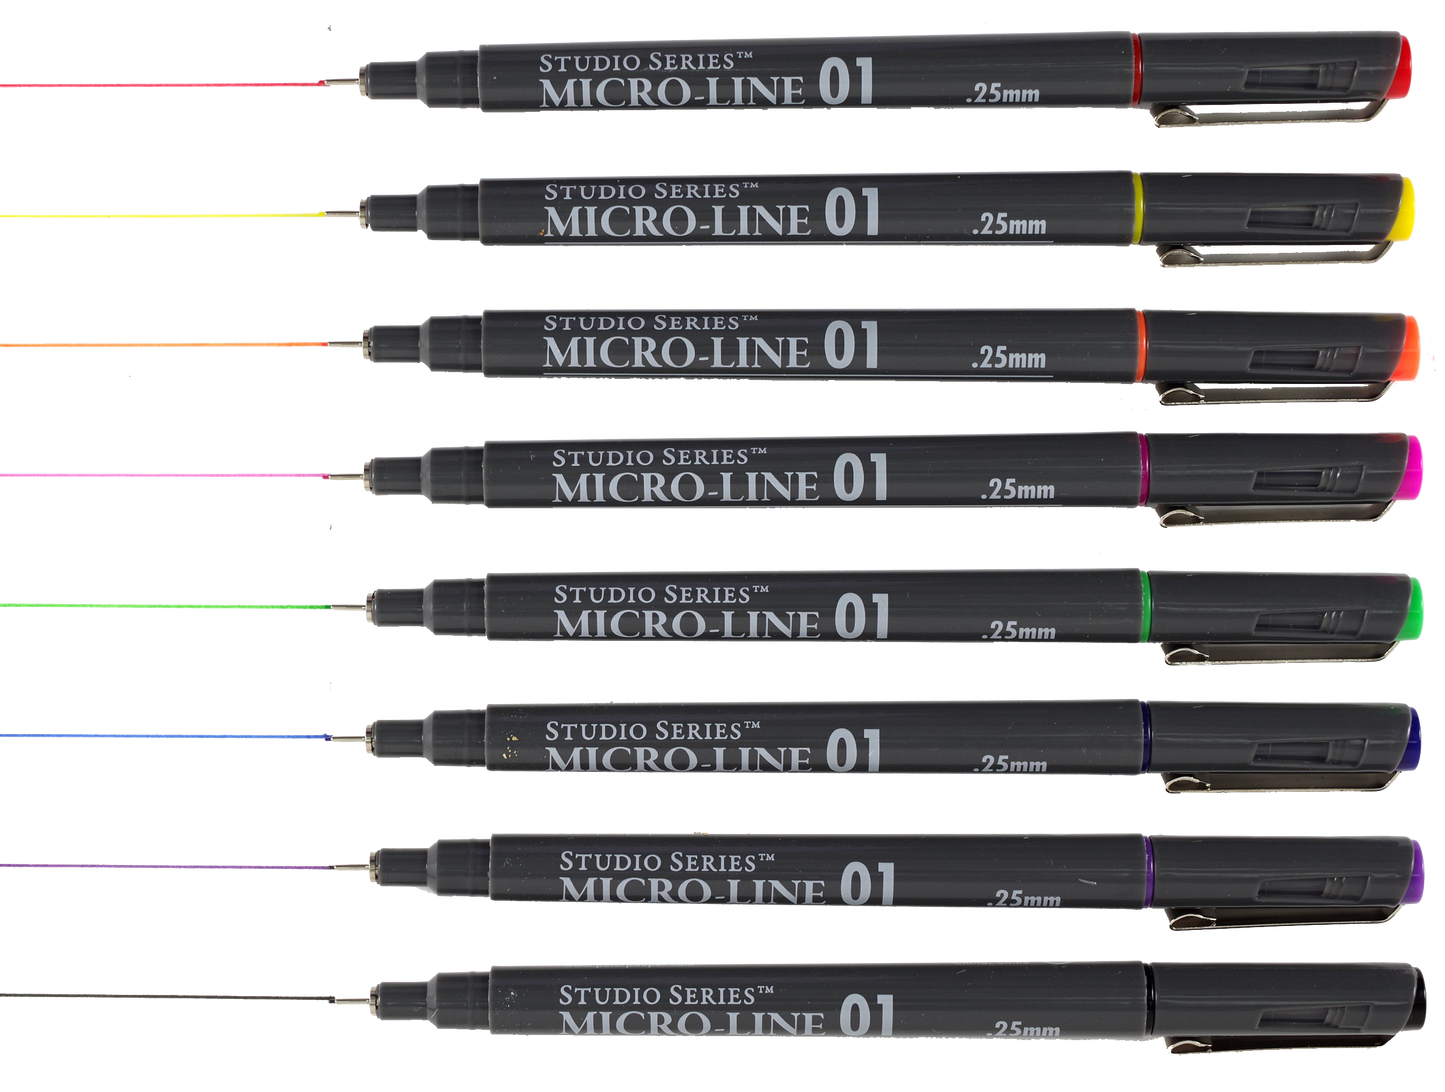 Bible Micro-Line Color Pens (8-piece Set)